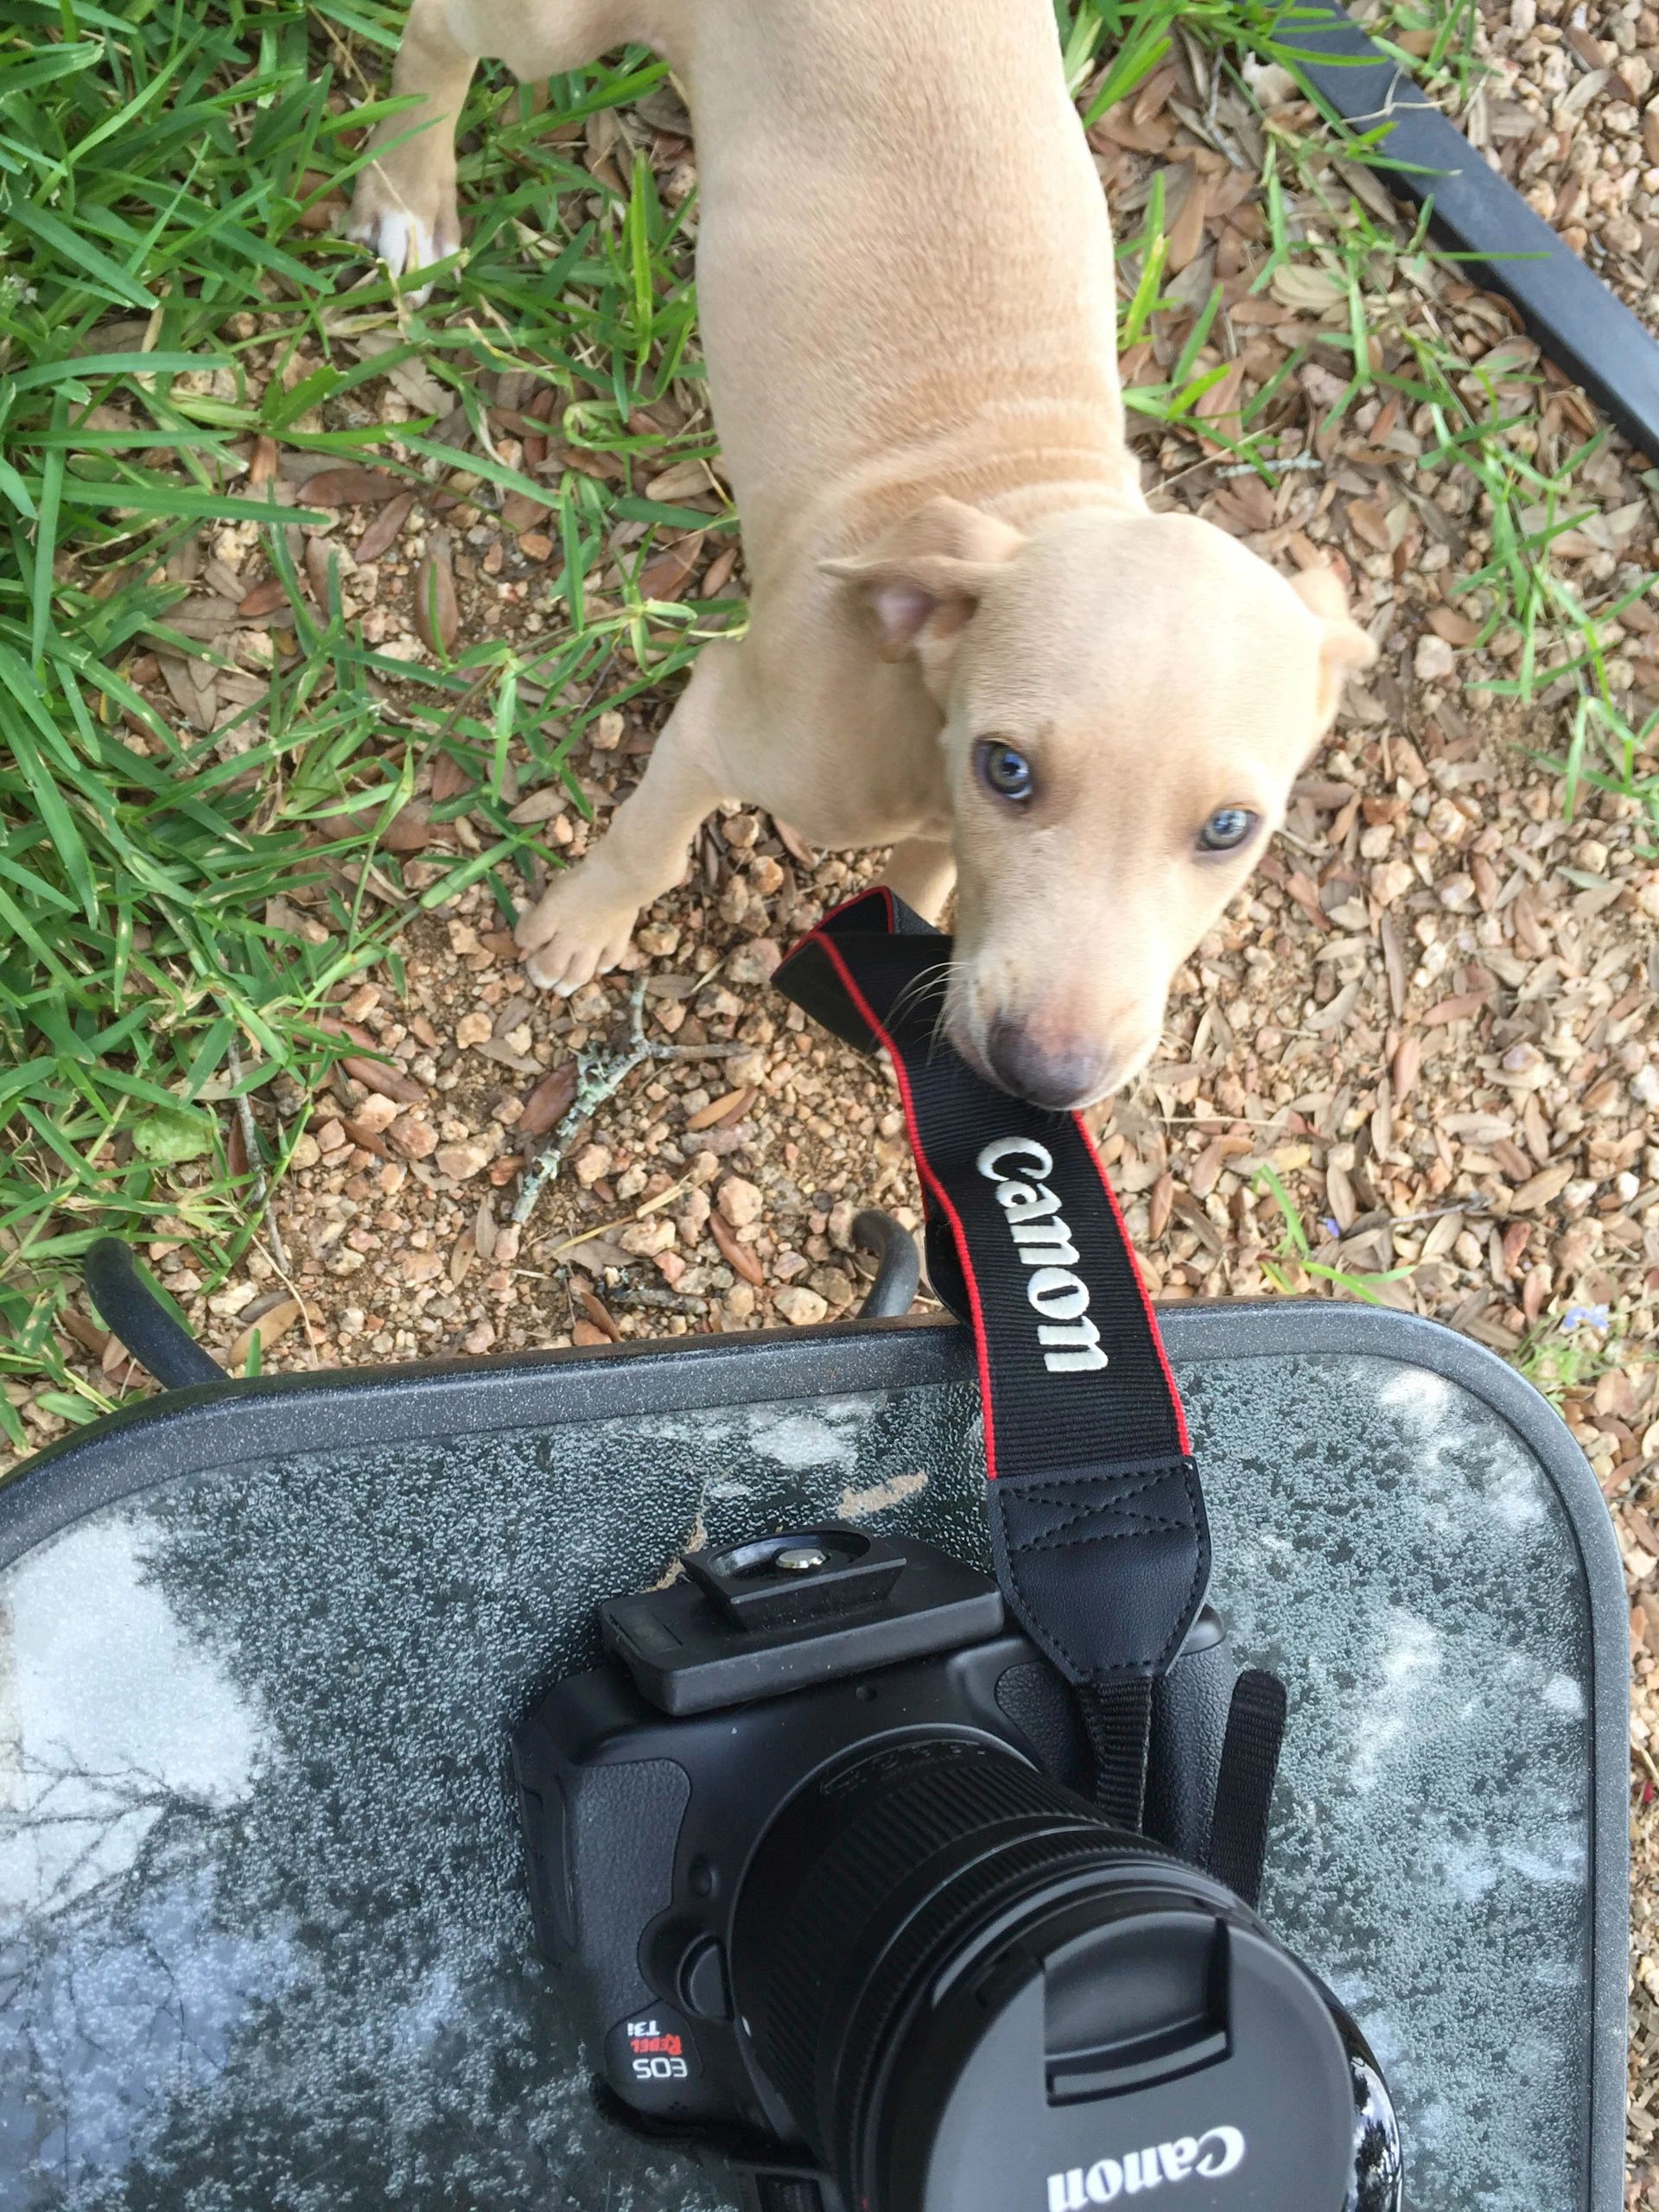 Lovett puppy portrait with a canon camera